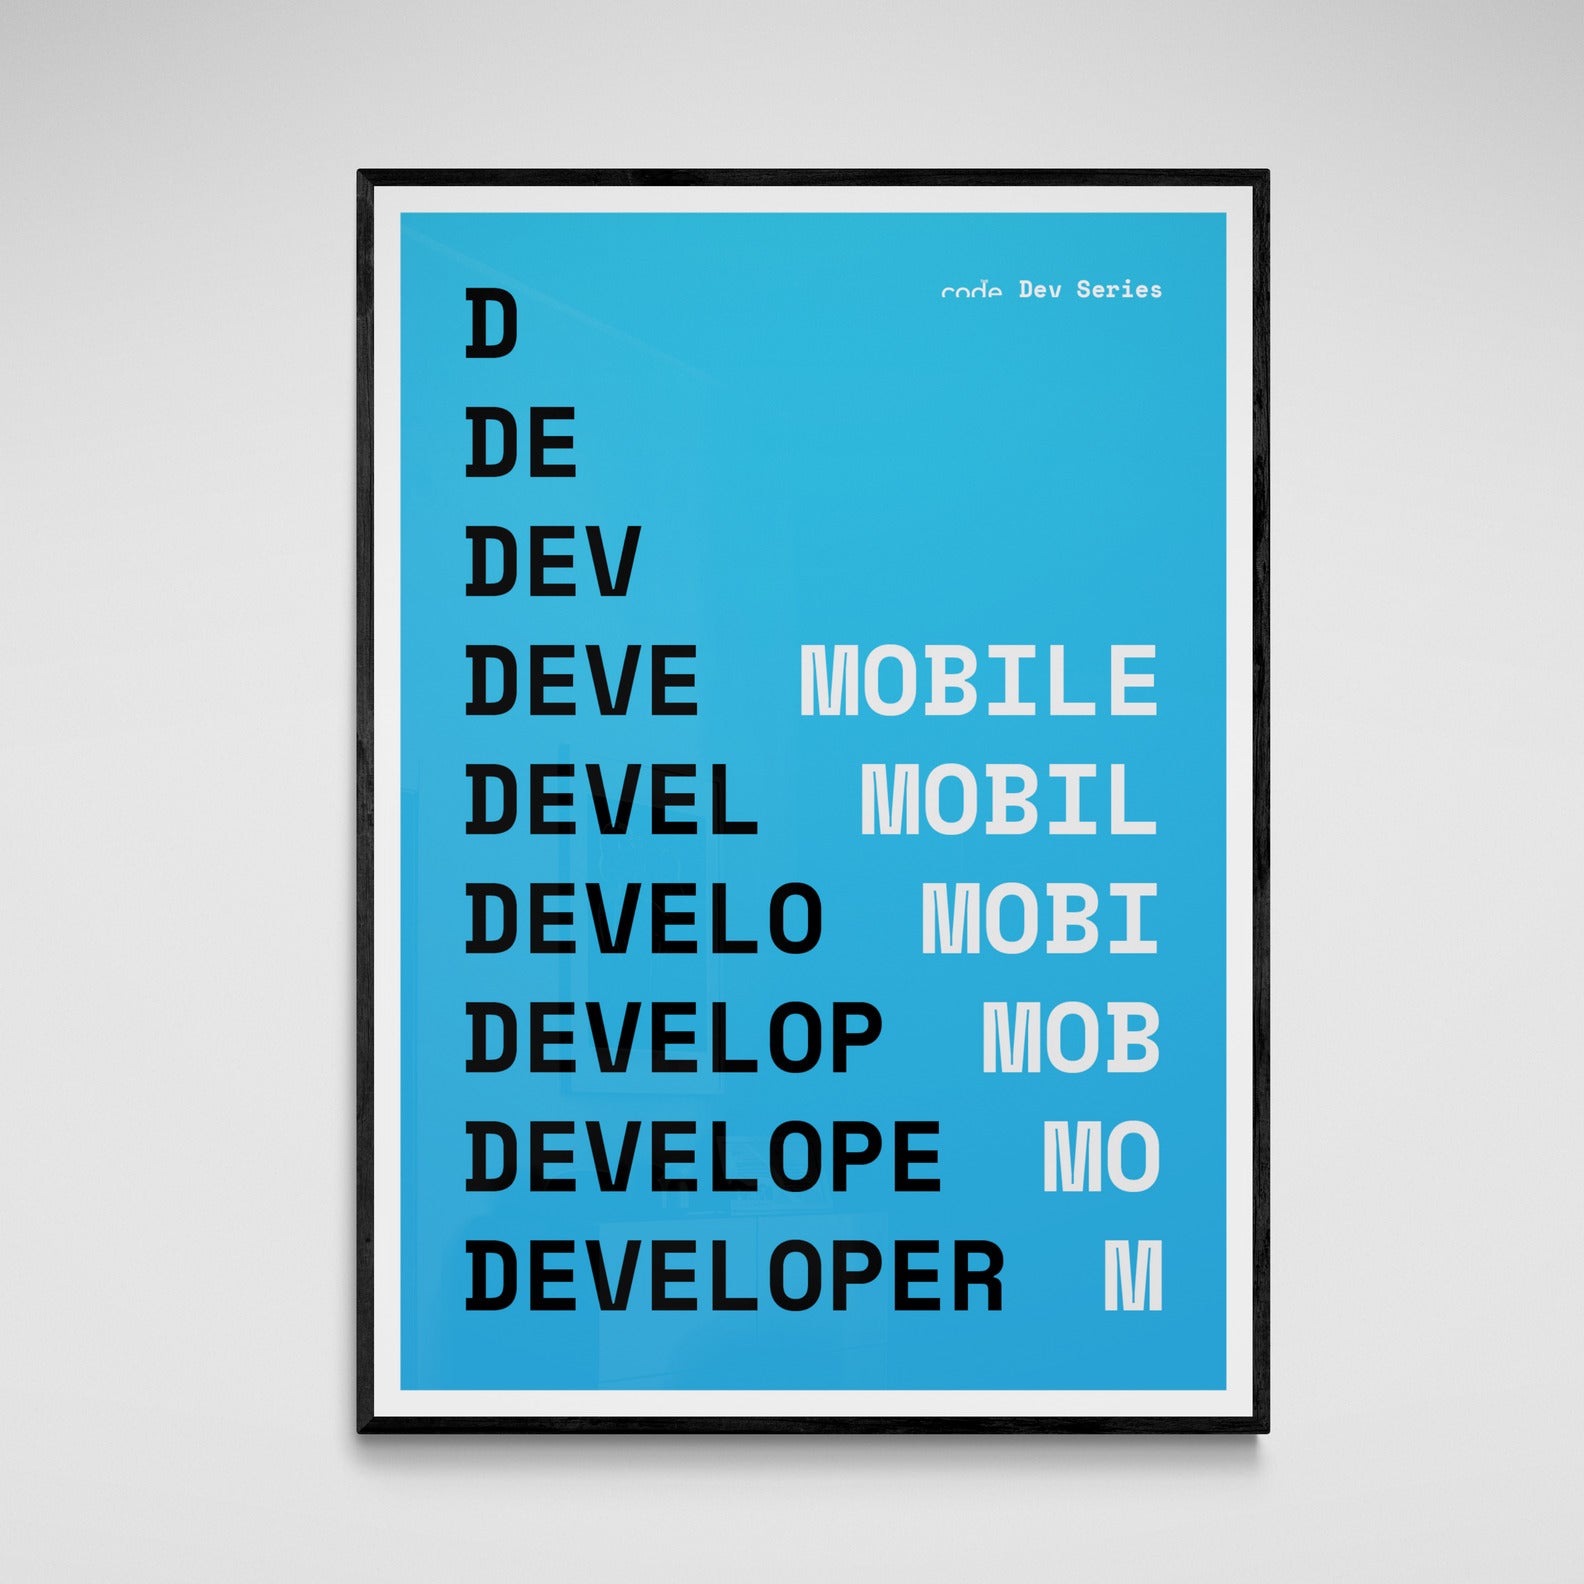 Mobile Developer Poster